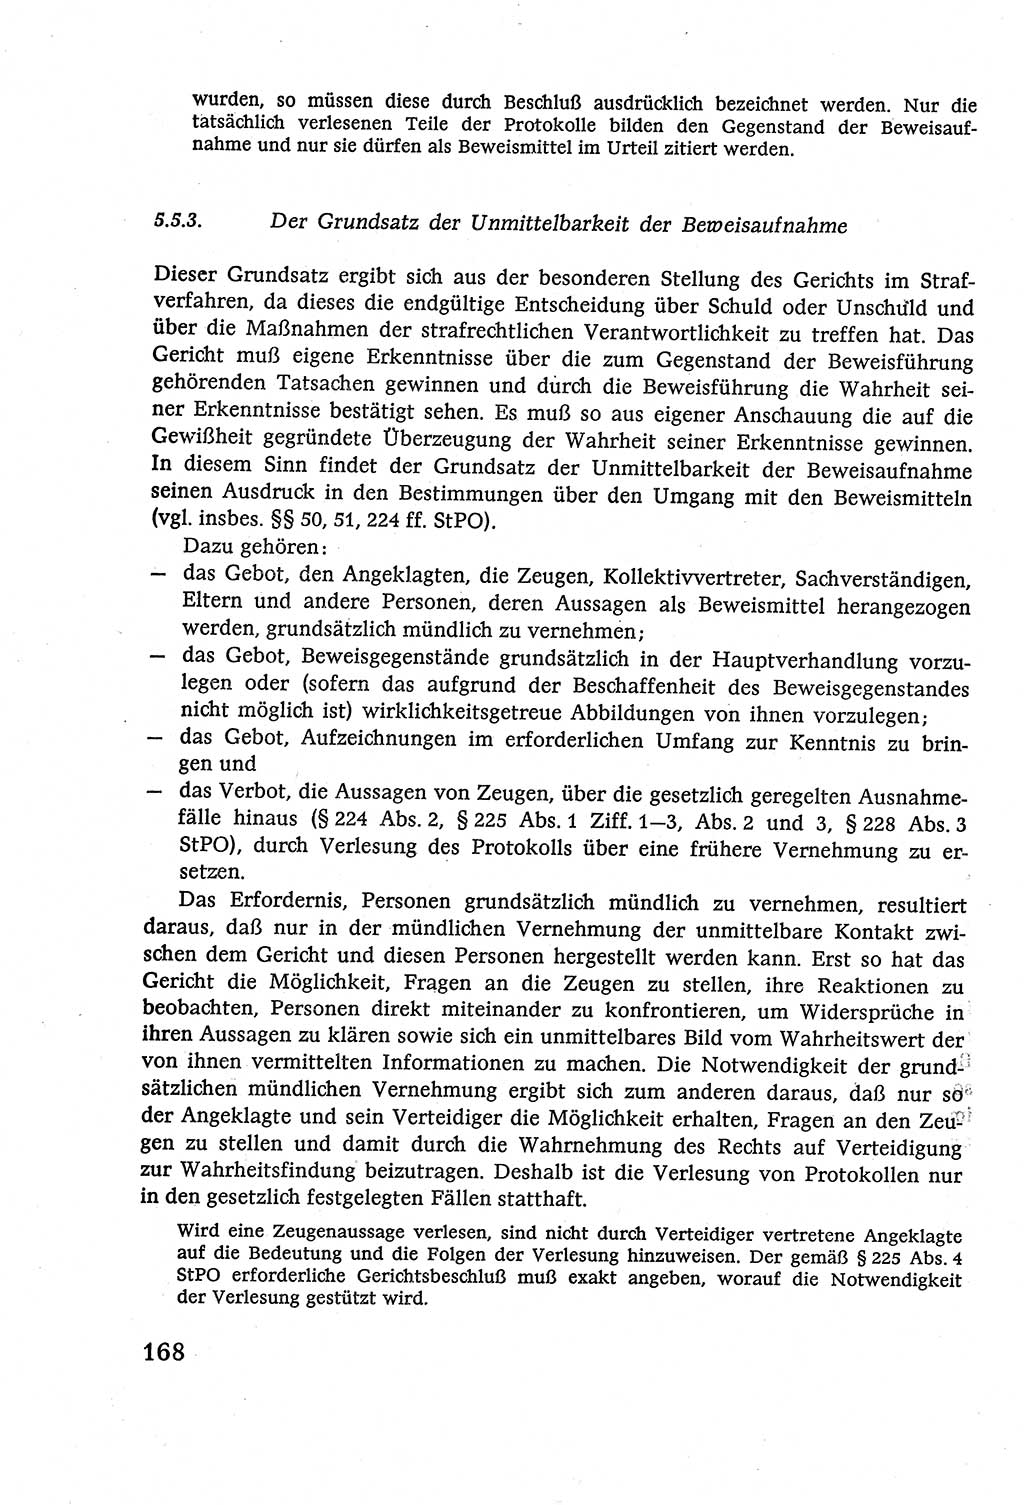 Strafverfahrensrecht [Deutsche Demokratische Republik (DDR)], Lehrbuch 1977, Seite 168 (Strafverf.-R. DDR Lb. 1977, S. 168)